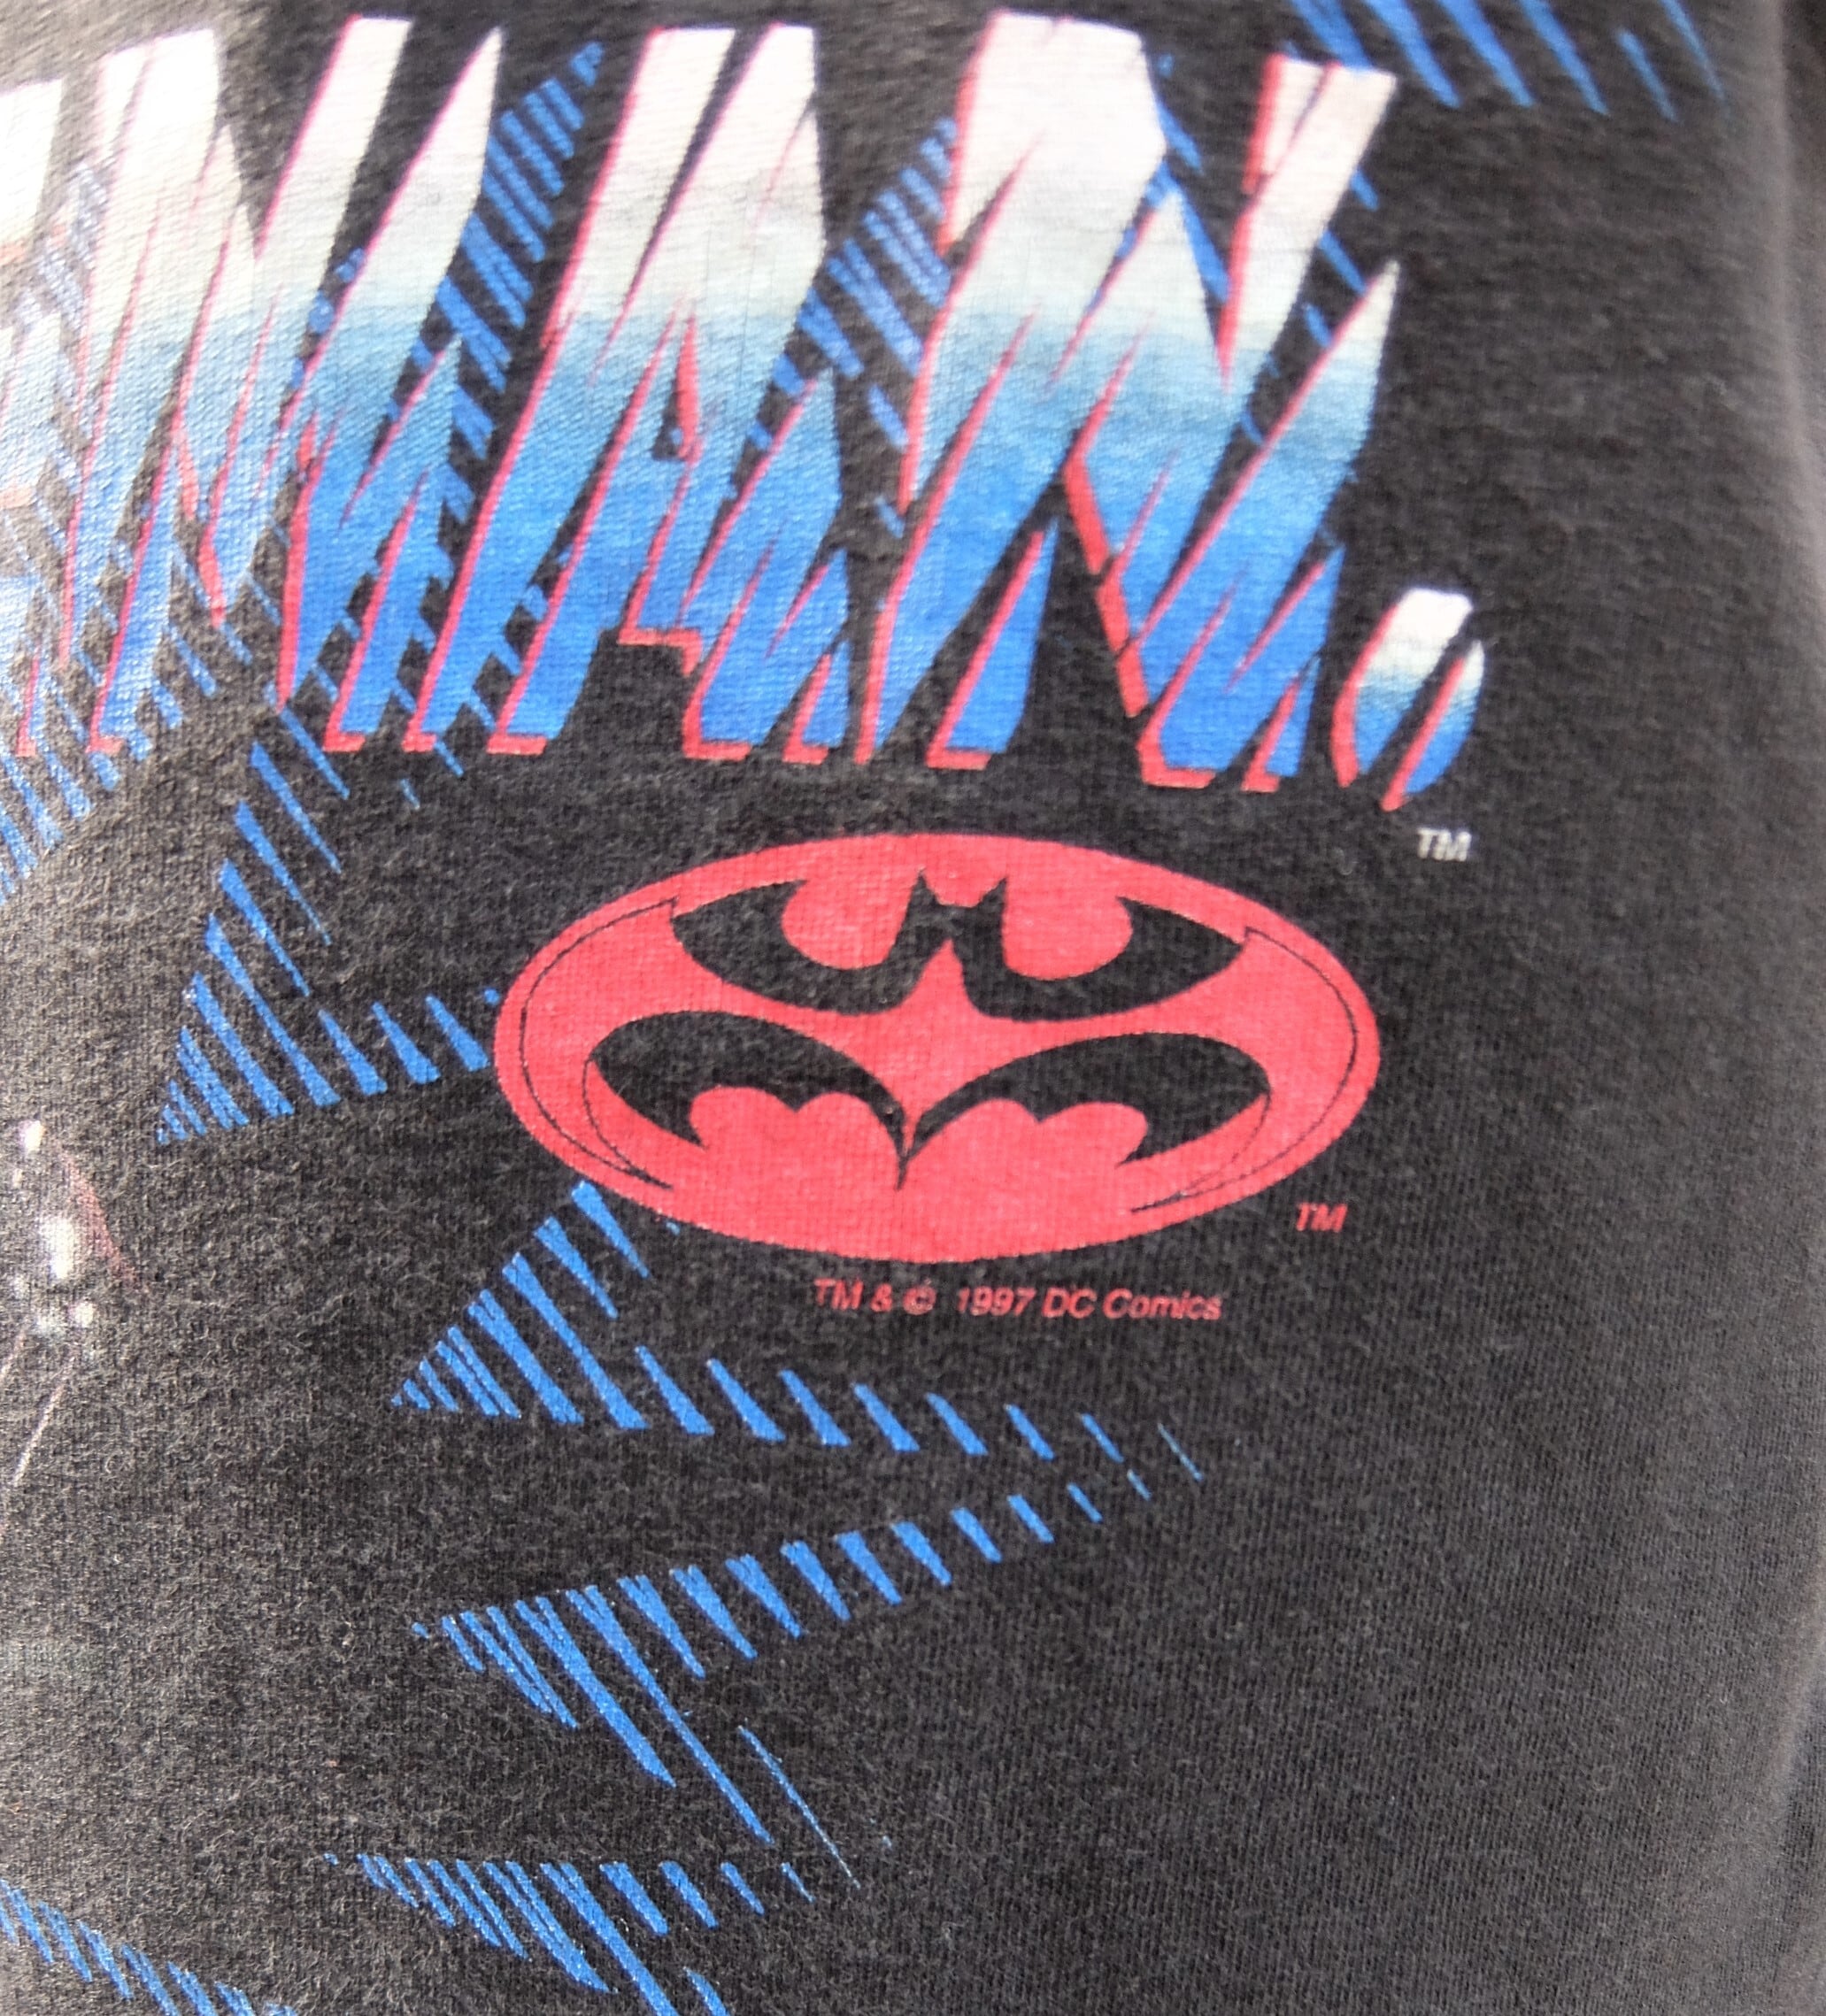 90s Batman Tシャツ